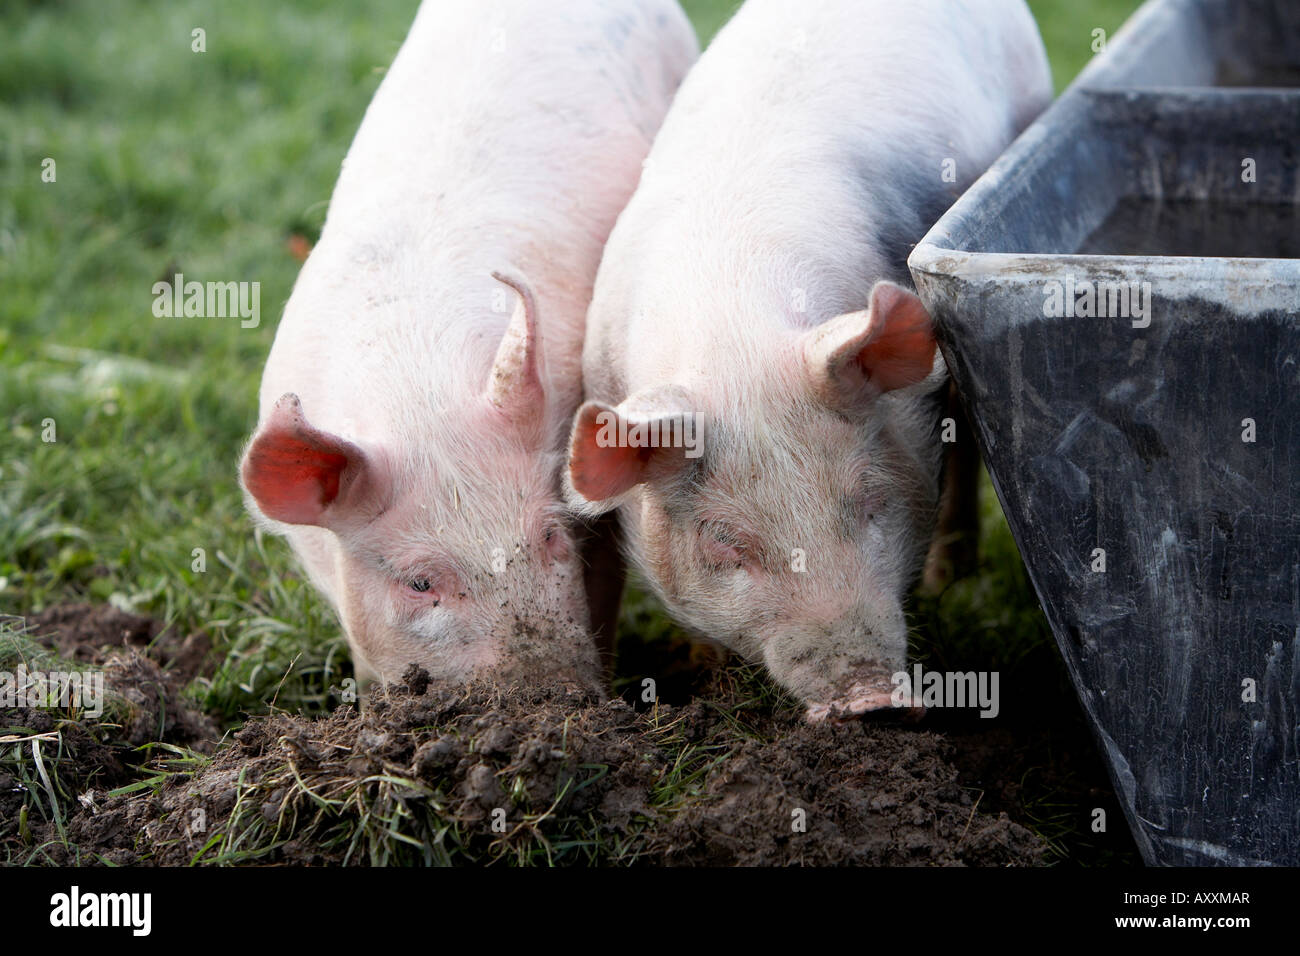 Deux porcs creuser dans la terre par l'auge de l'eau Banque D'Images